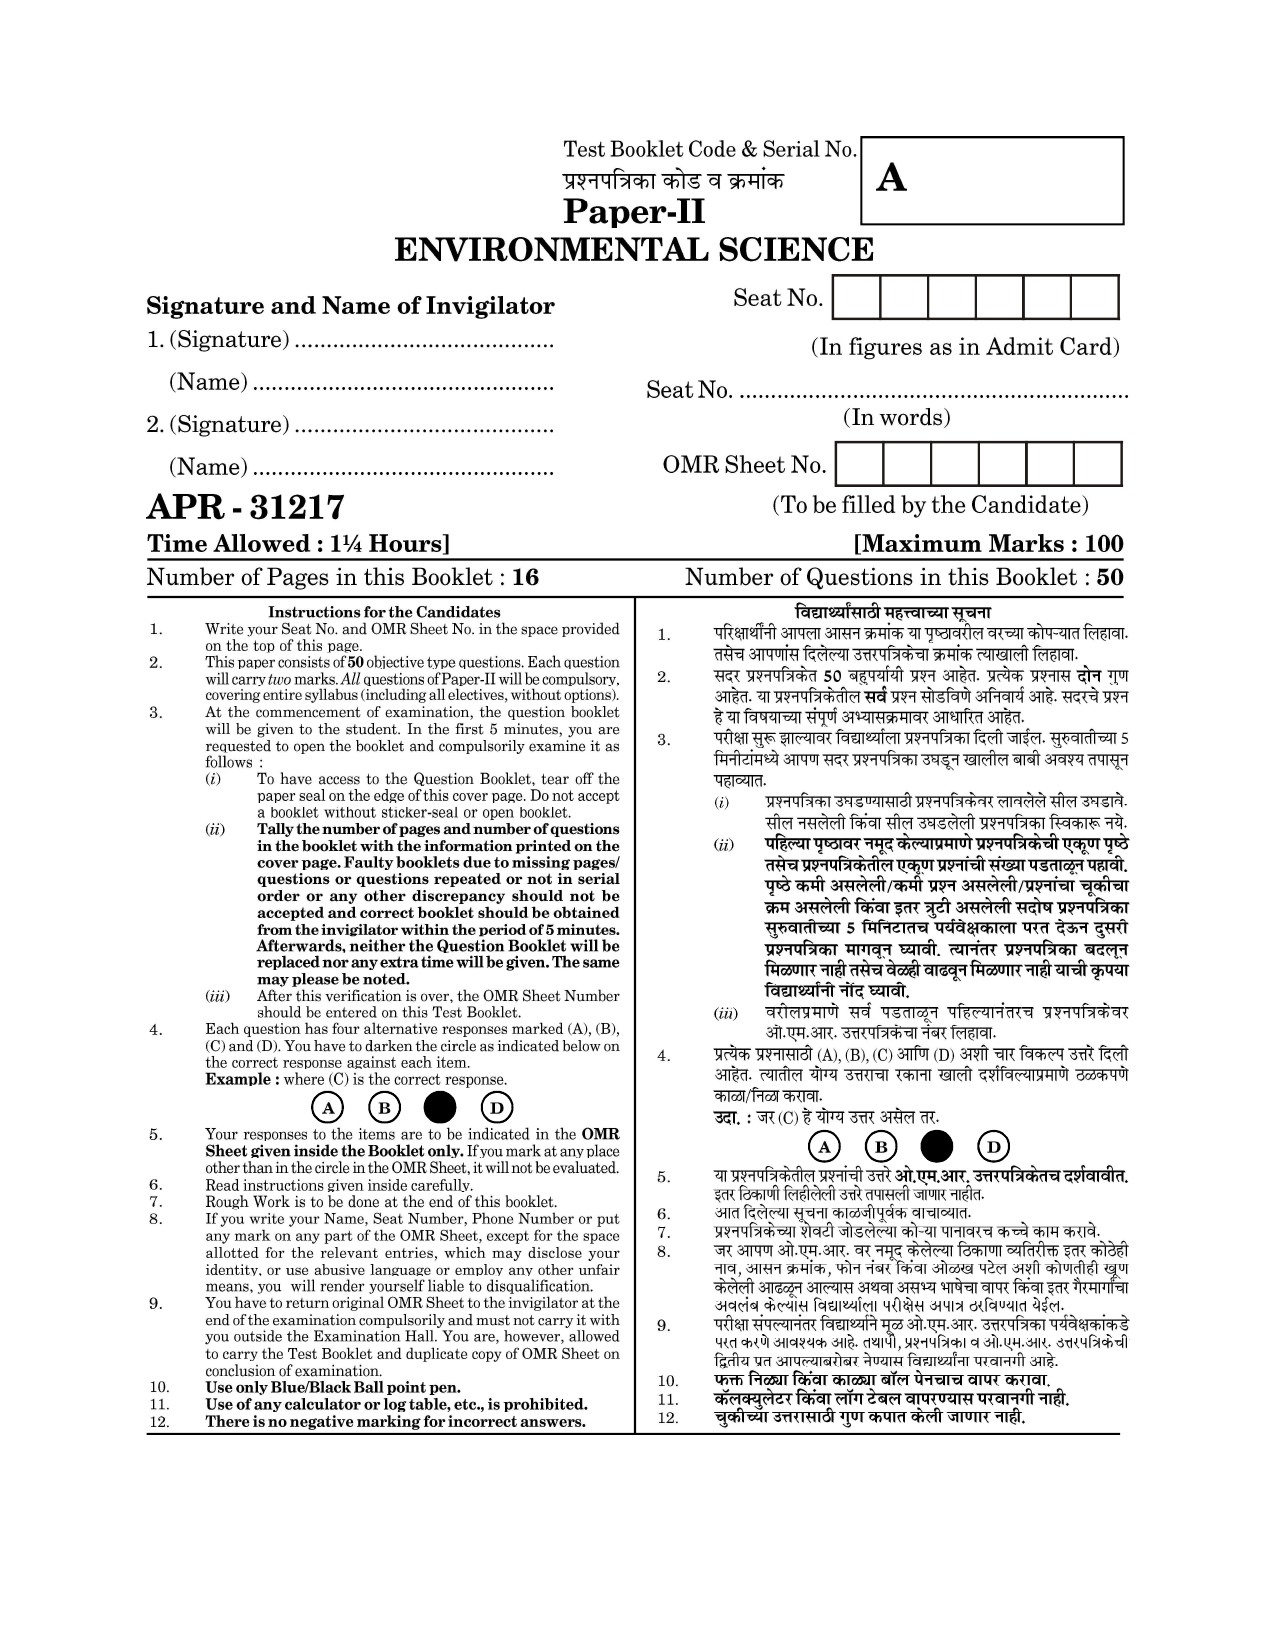 Maharashtra SET Environmental Sciences Question Paper II April 2017 1